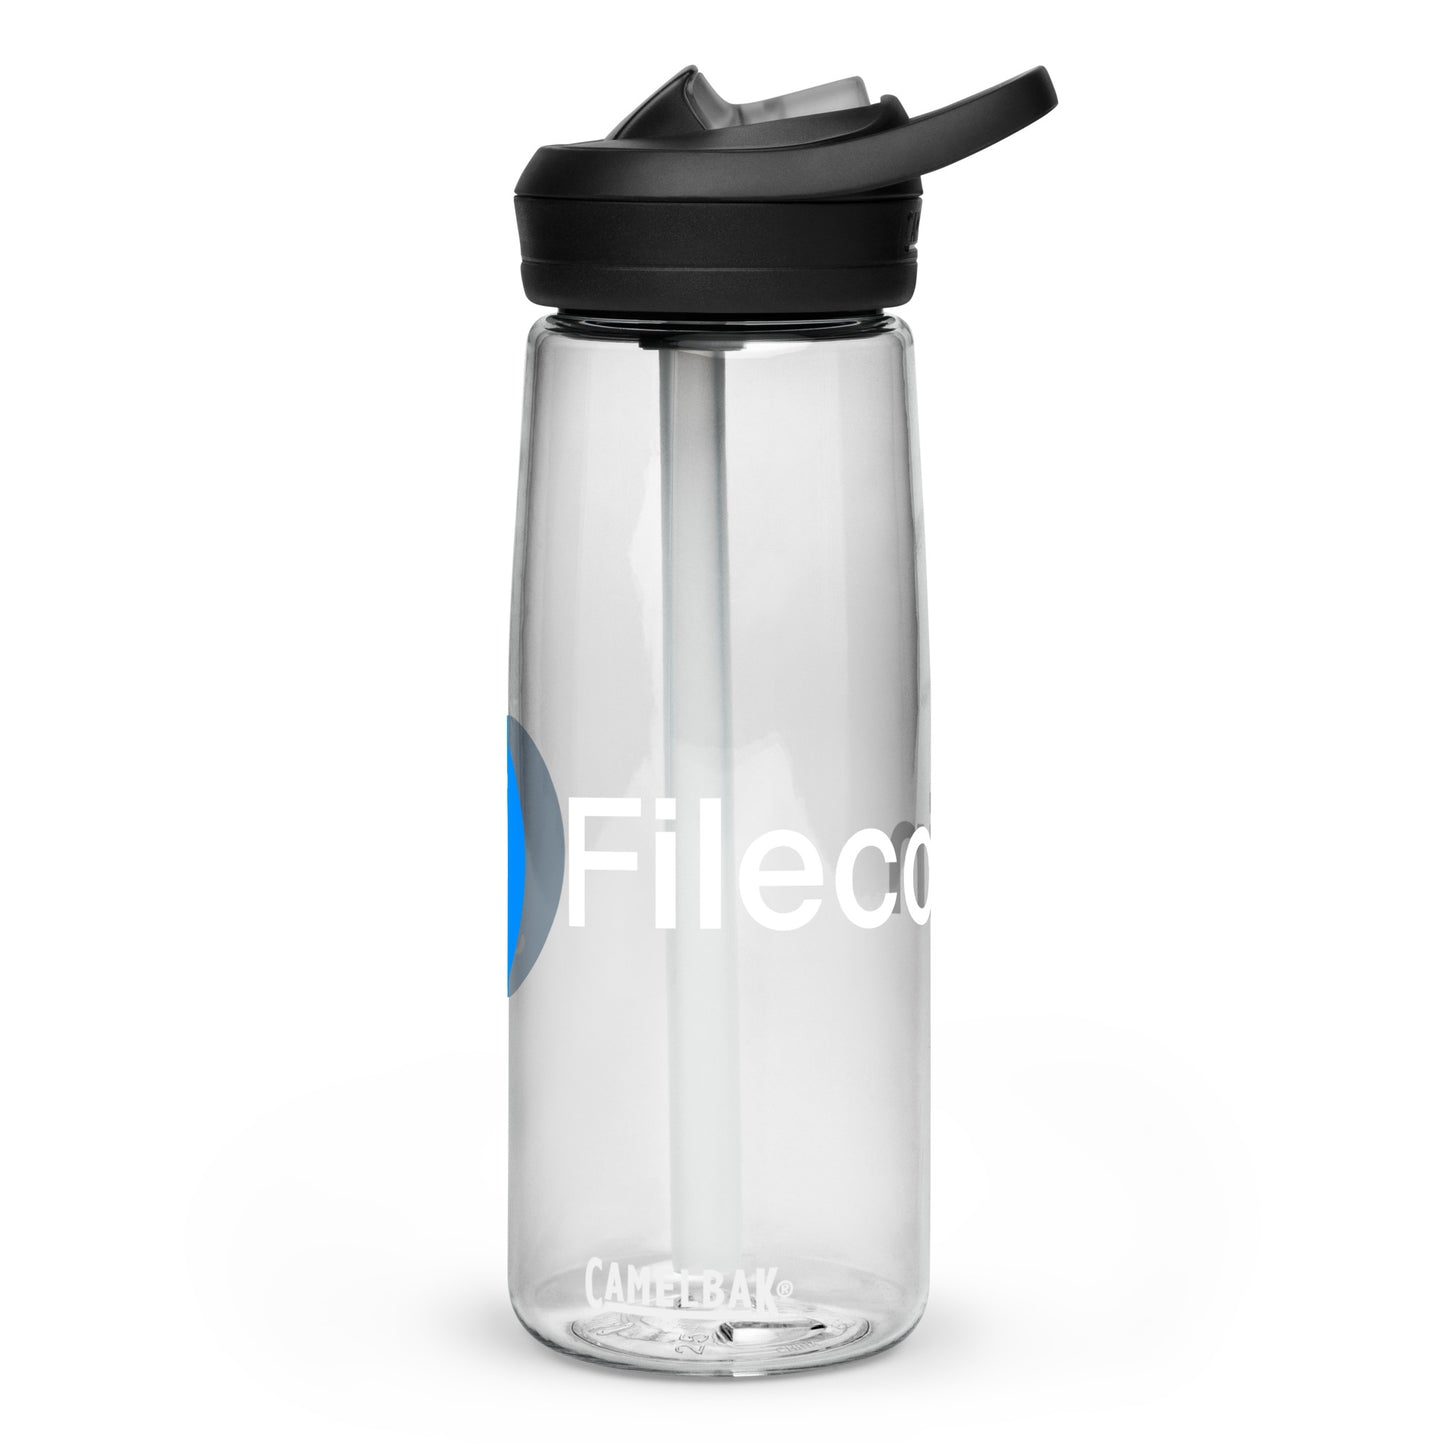 Filecoin CamelBak water bottle